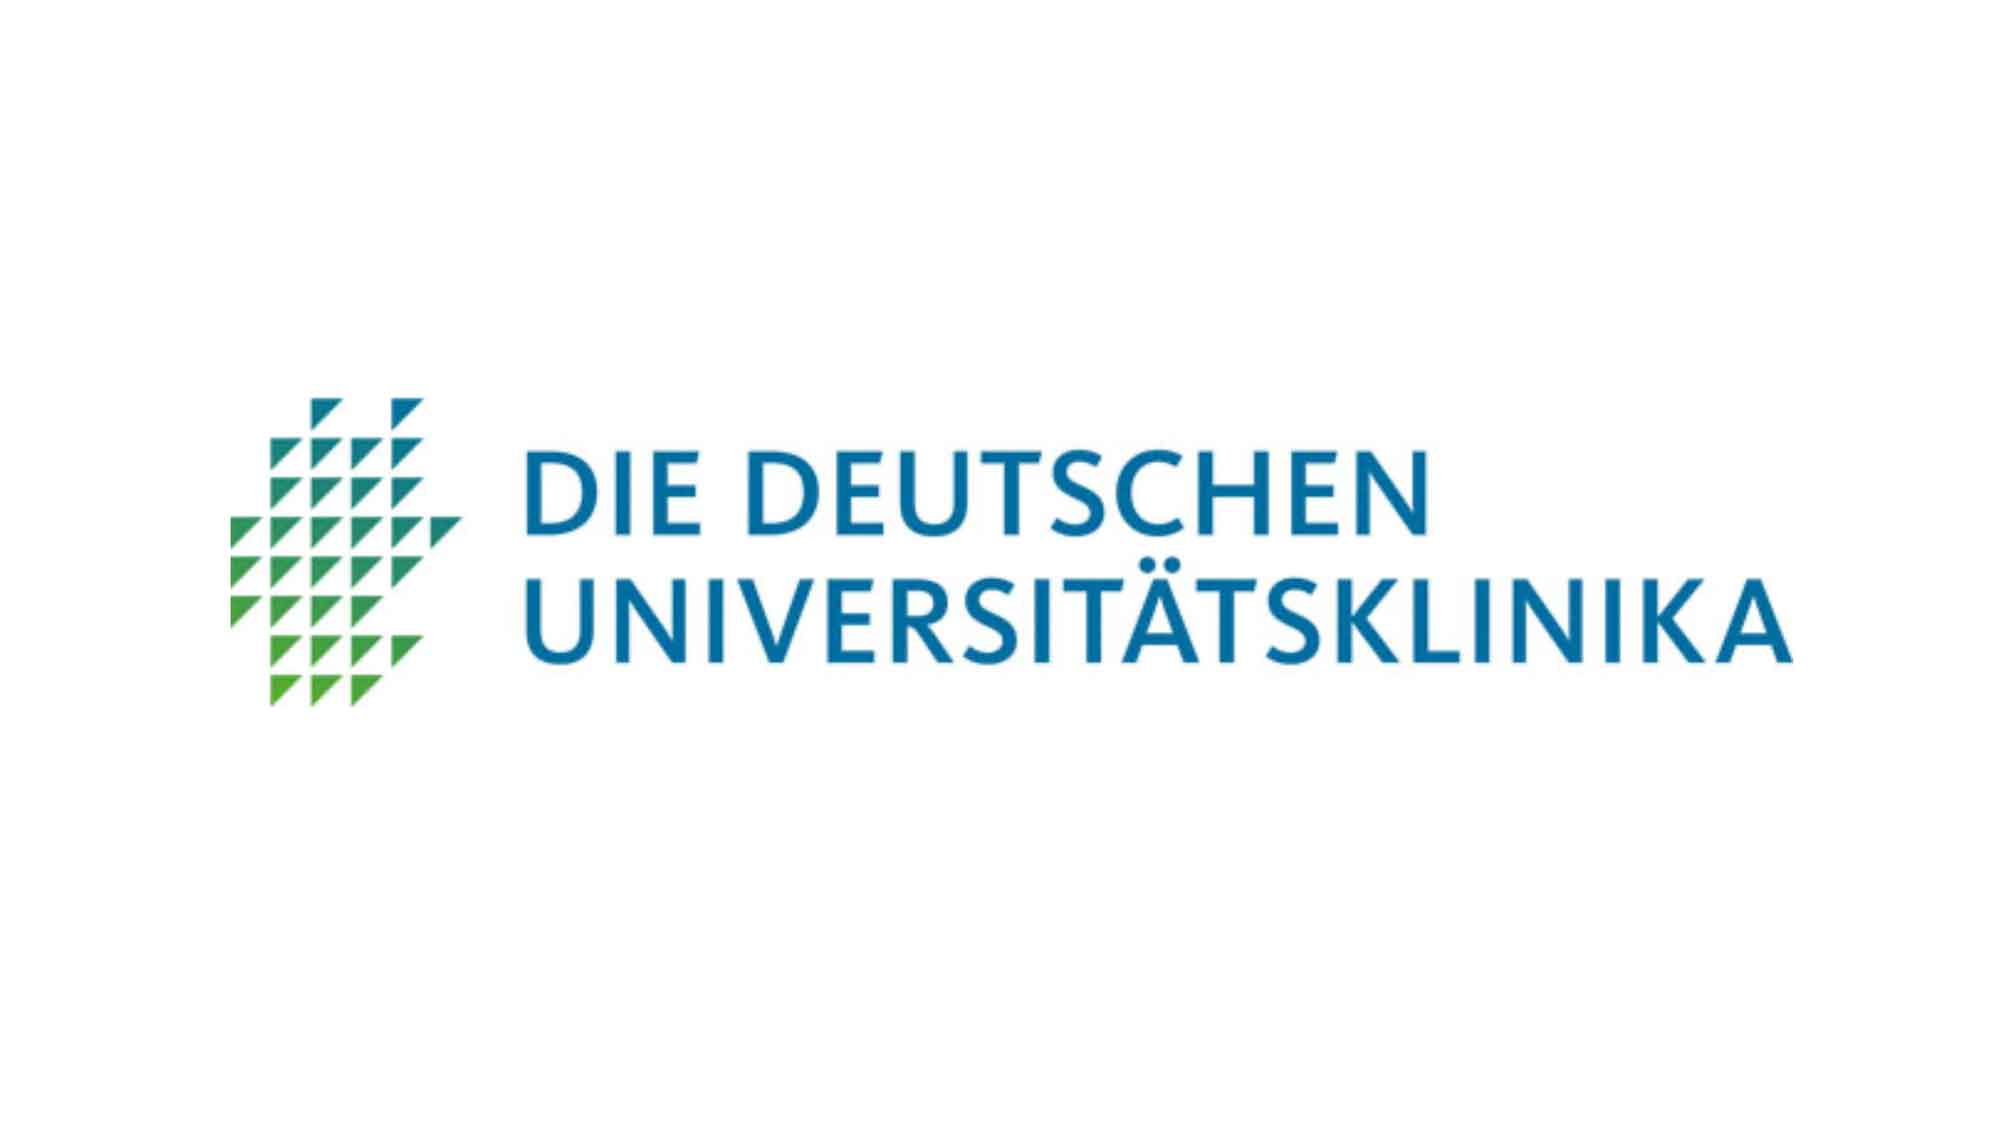 Die Deutschen Universitätsklinika: Eckpunkte zur Krankenhausreform zeitnah umsetzen